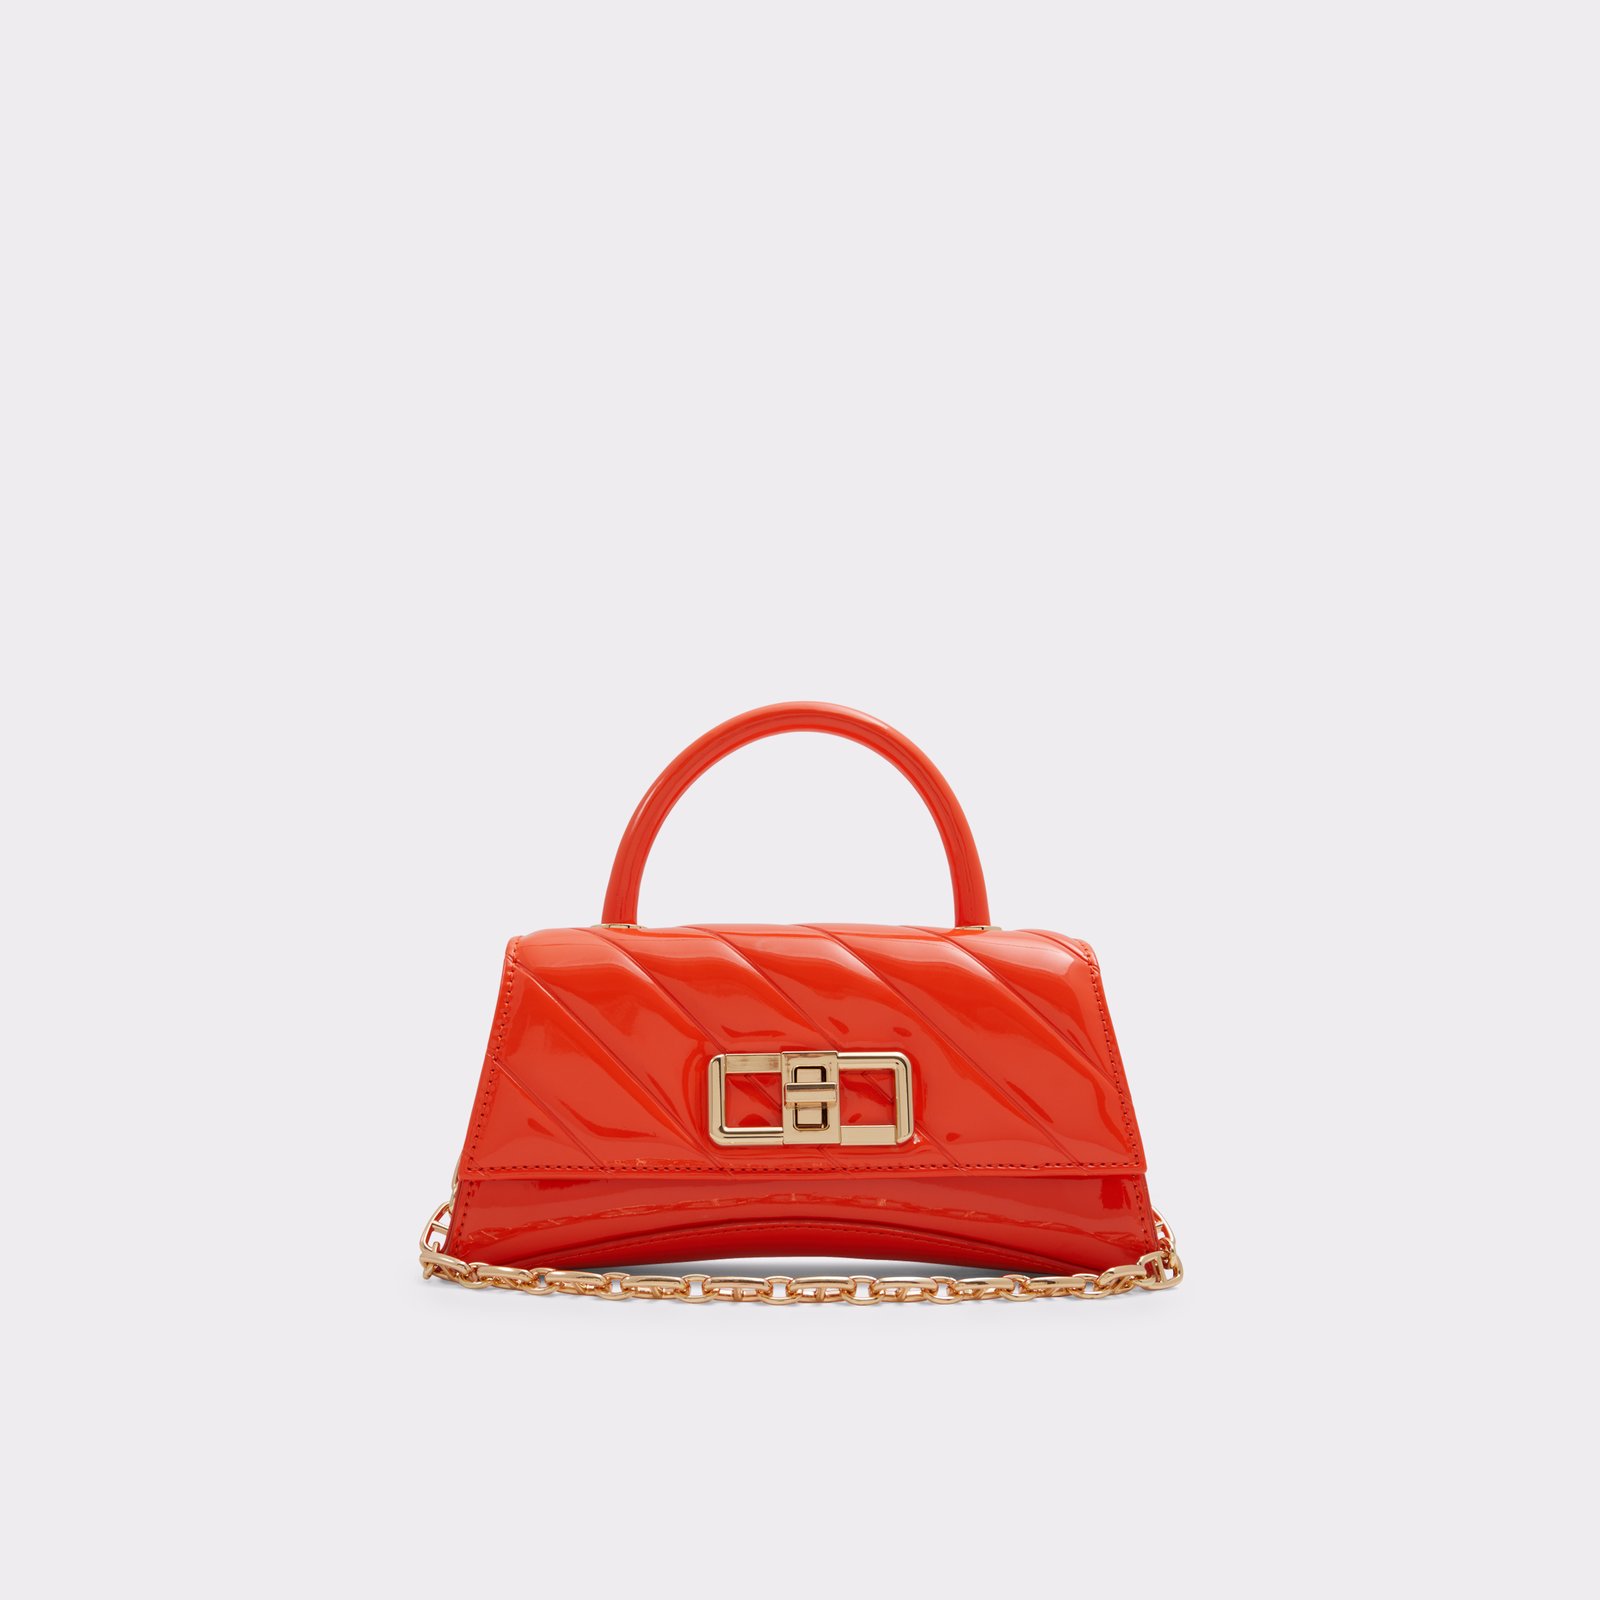 Landenassix Orange Women's Top Handle Bags | ALDO US